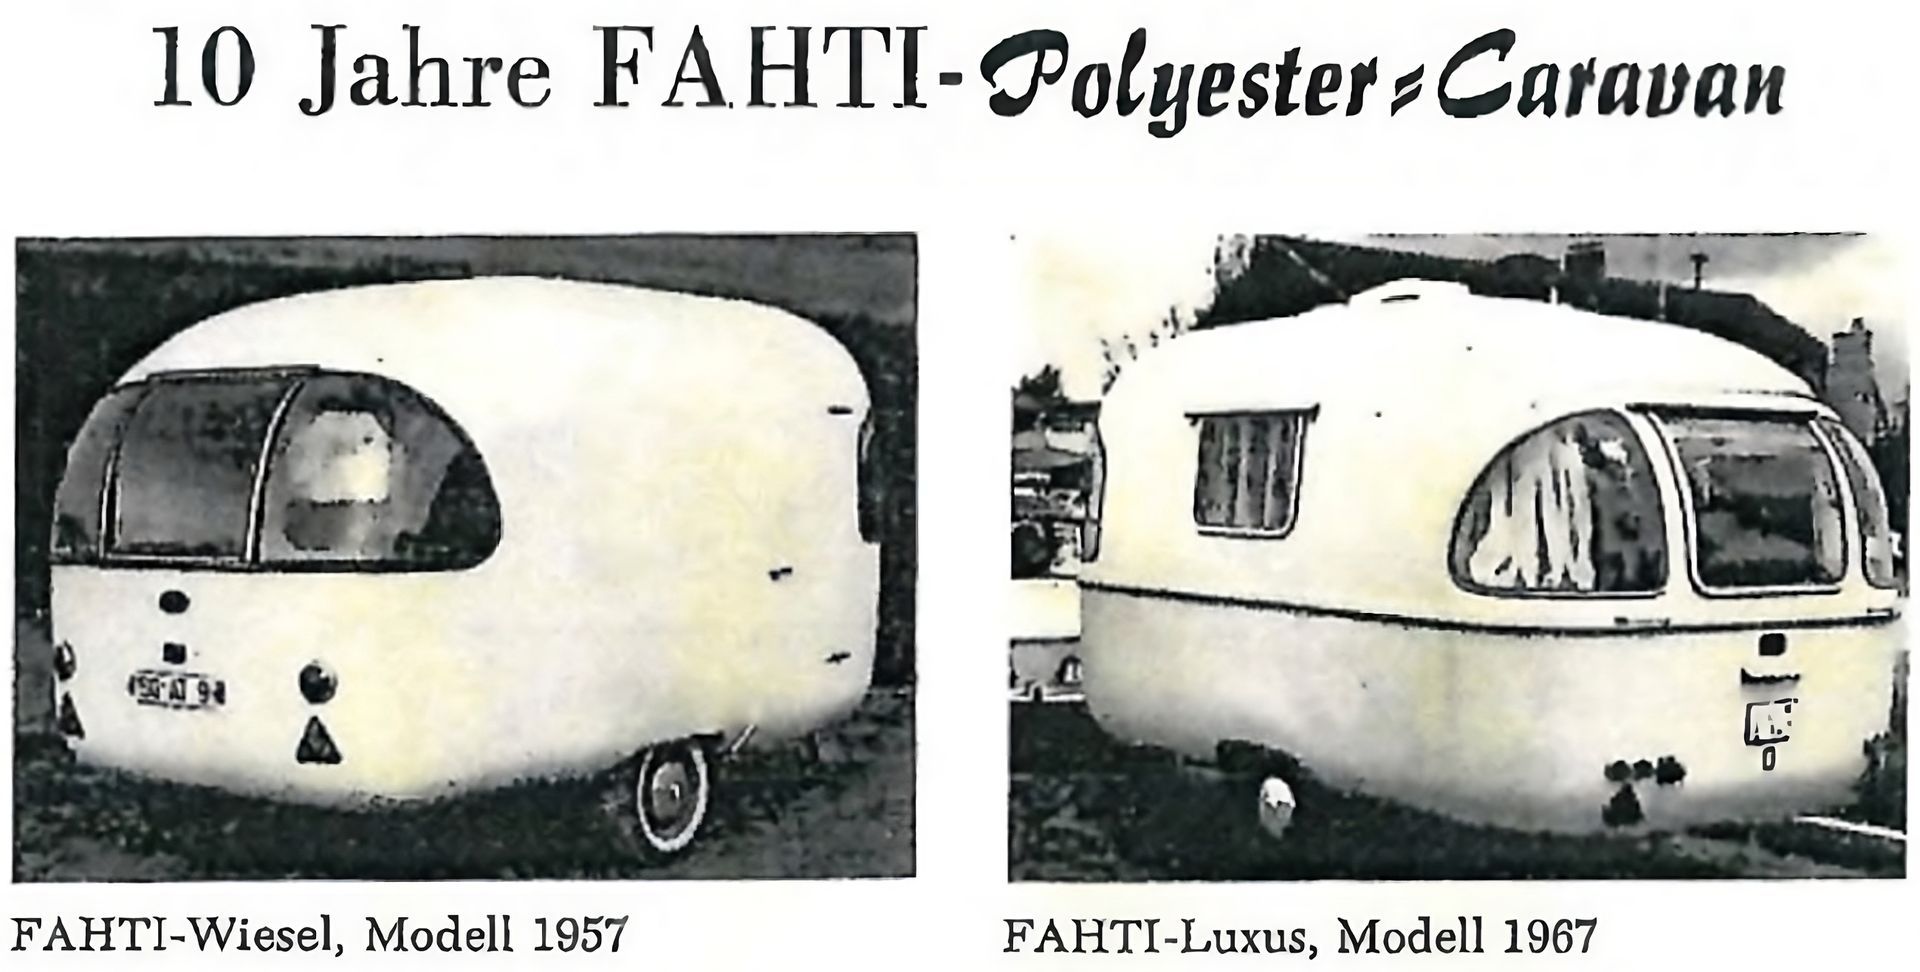 10 Jahre FAHTI-Polyester Caravan